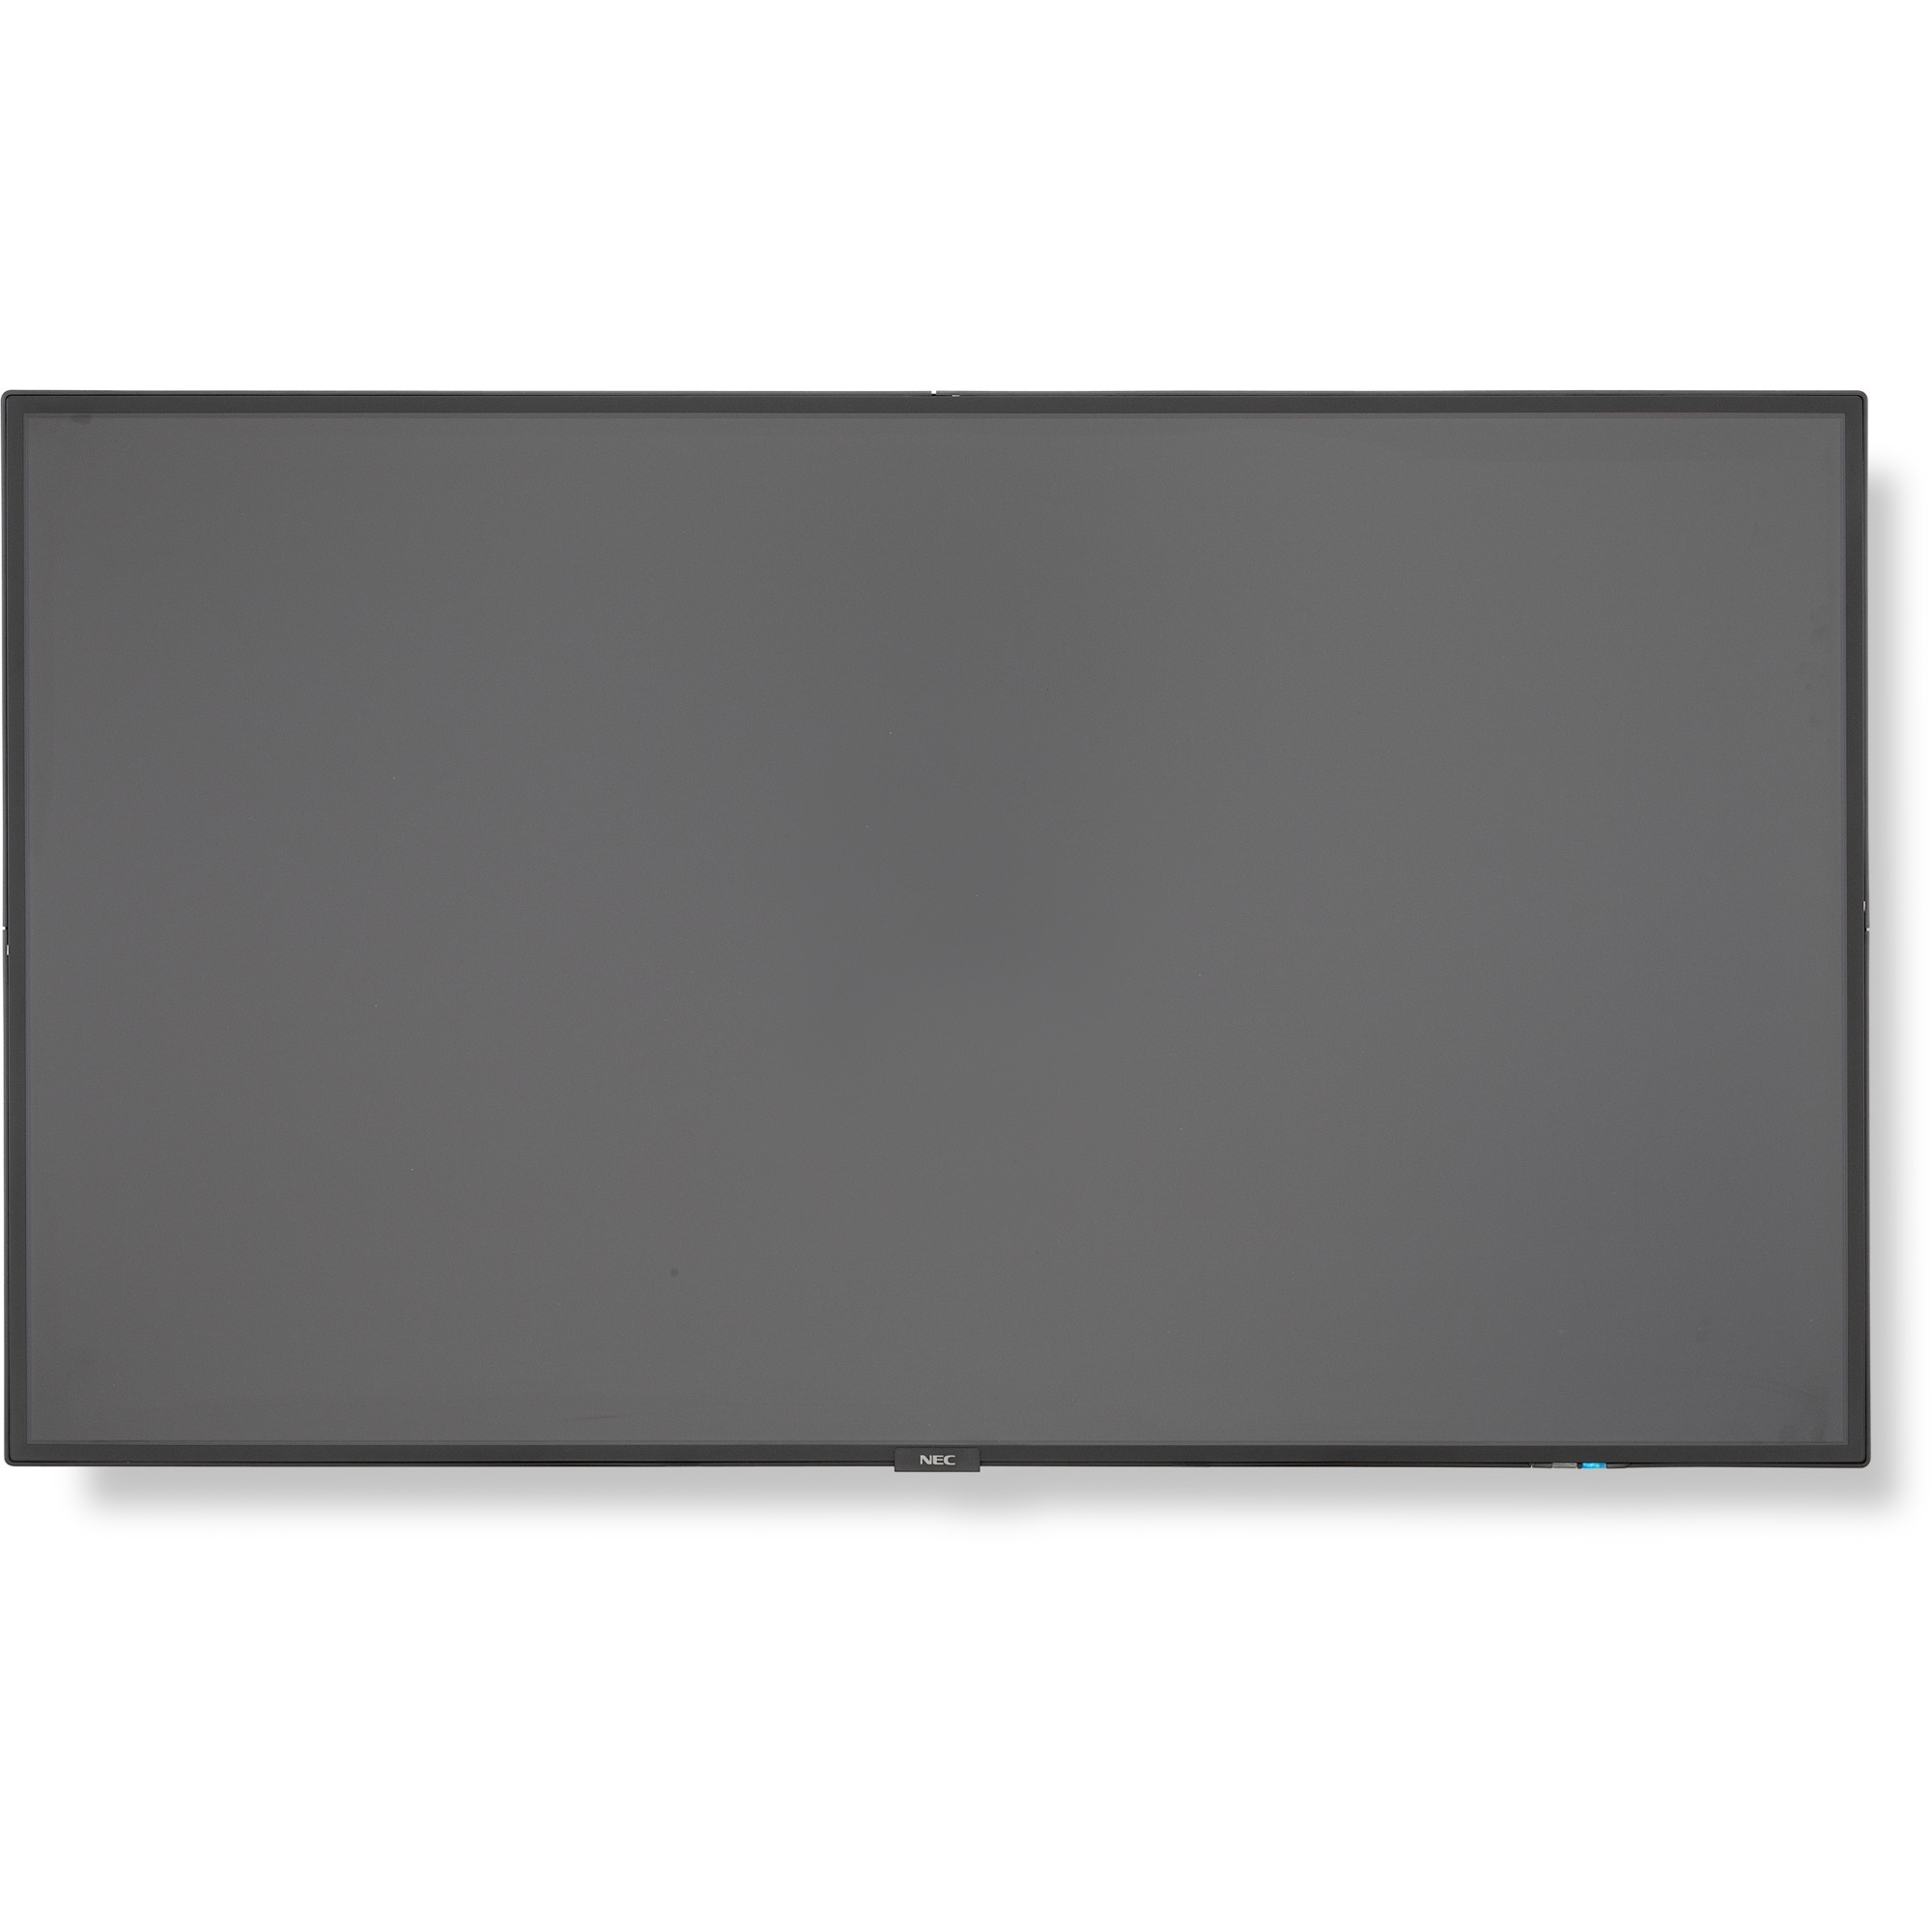 MultiSync P484 121,9 cm (48") LED (Dioda elektroluminescencyjna) Full HD Digital signage flat panel Czarny, Wyświetlacz